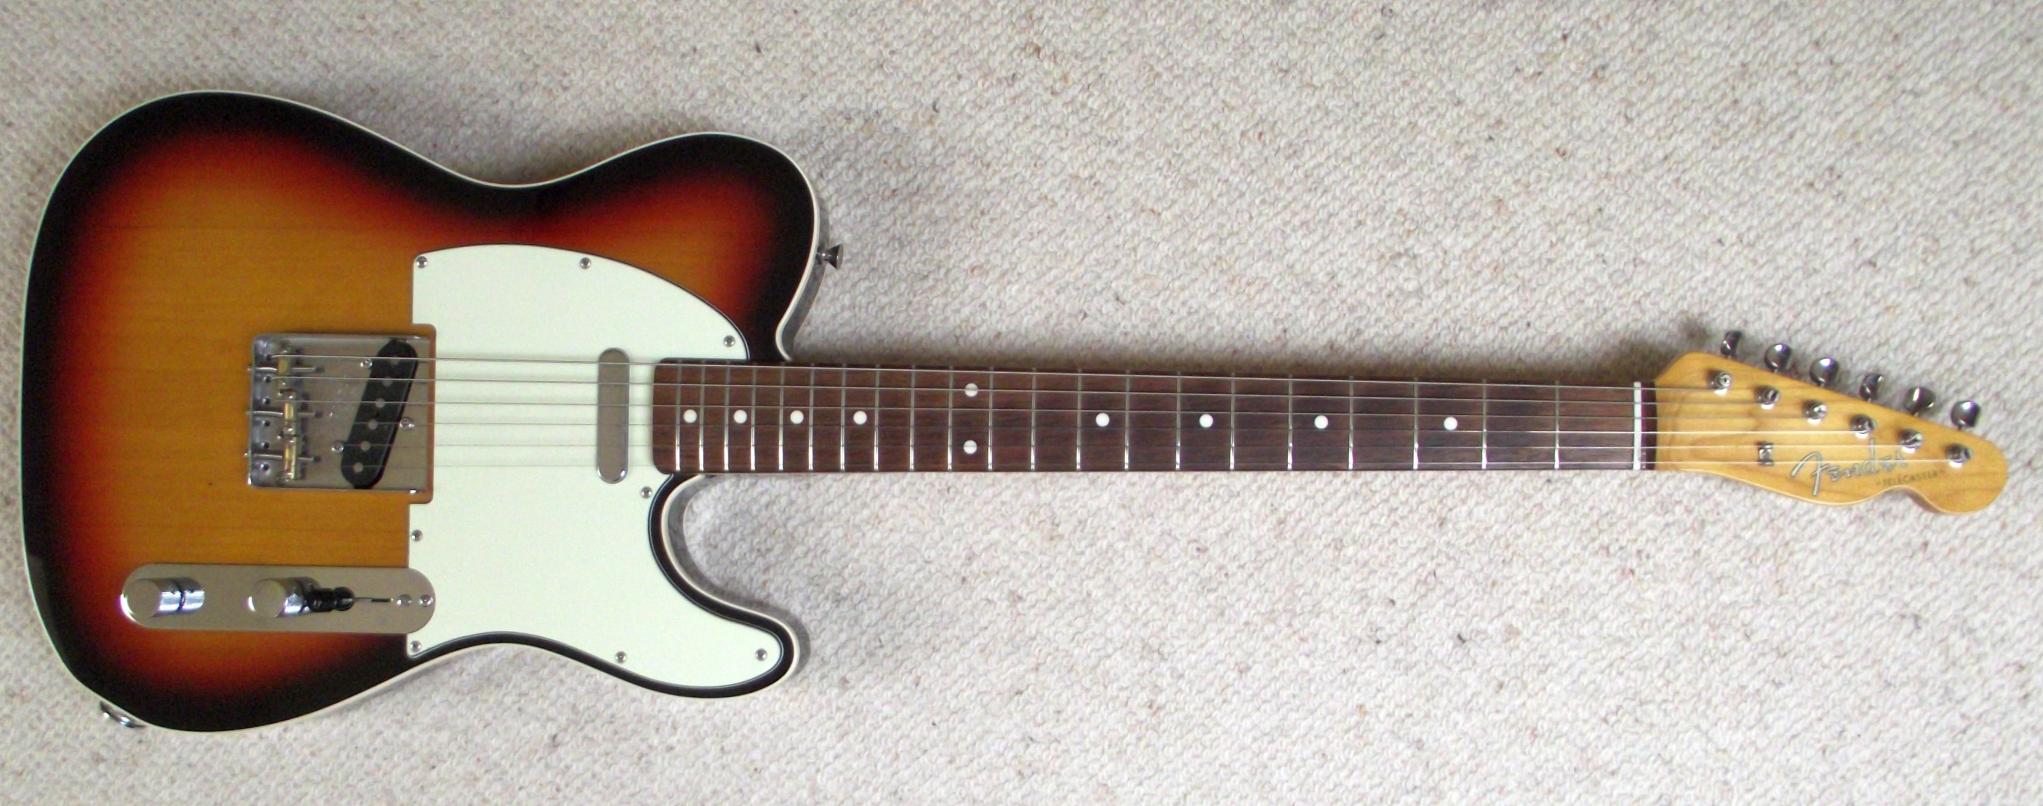 Fender Telecaster mit 51 Nocaster Pickups, eine Gitarre auf die ich immer wieder gern zurück komme. S044162